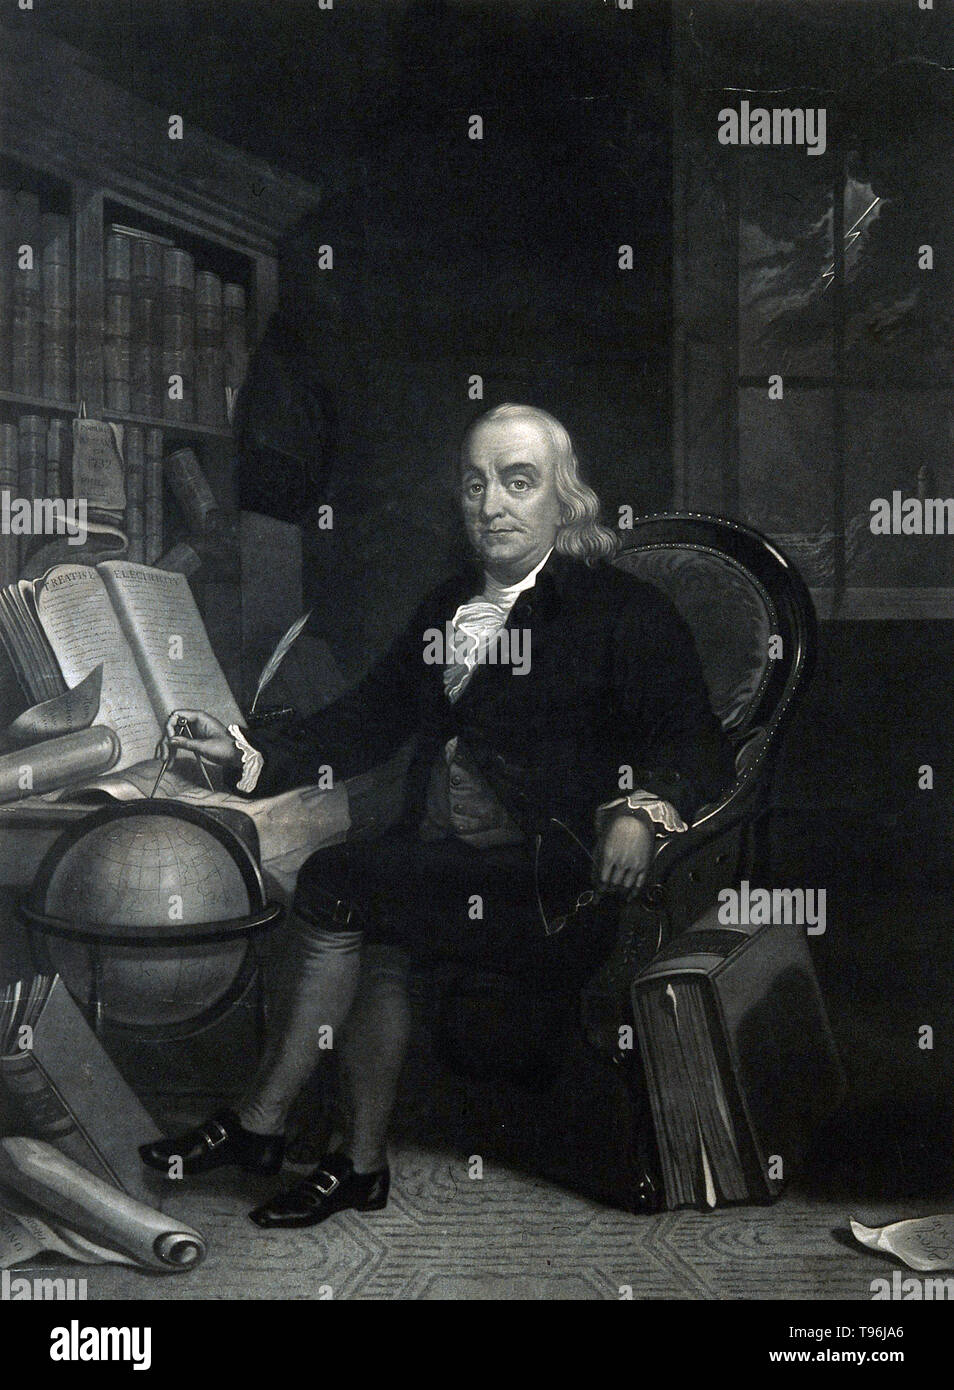 Benjamin Franklin (Gennaio 17, 1706 - Aprile 17, 1790) è stato uno dei padri fondatori degli Stati Uniti. Egli era un autore, una stampante, un teorico politico, politico, postmaster, scienziato, musicista, inventore, Satiro, attivista civica, statista e diplomatico. Come scienziato, egli è stato una figura importante nella American Illuminismo e la storia della fisica per le sue scoperte e le teorie in materia di elettricità. Foto Stock